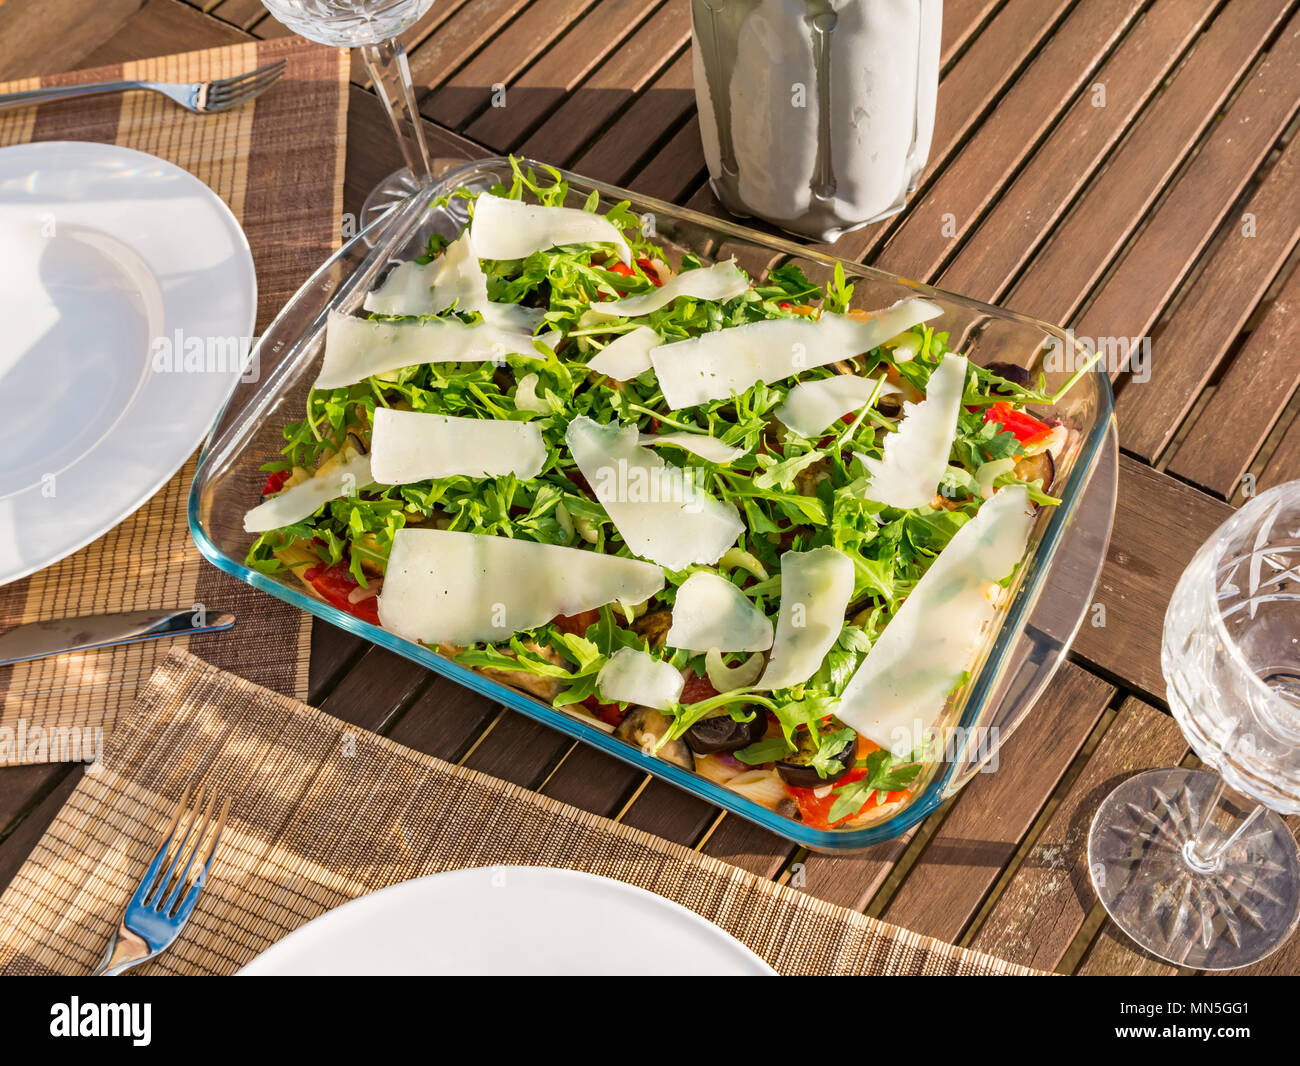 Tavolo esterno nella luce del sole con insalata di pasta piatto, cristallo bicchieri di vino e una bottiglia di vino bianco freddo nello scambiatore di calore Foto Stock